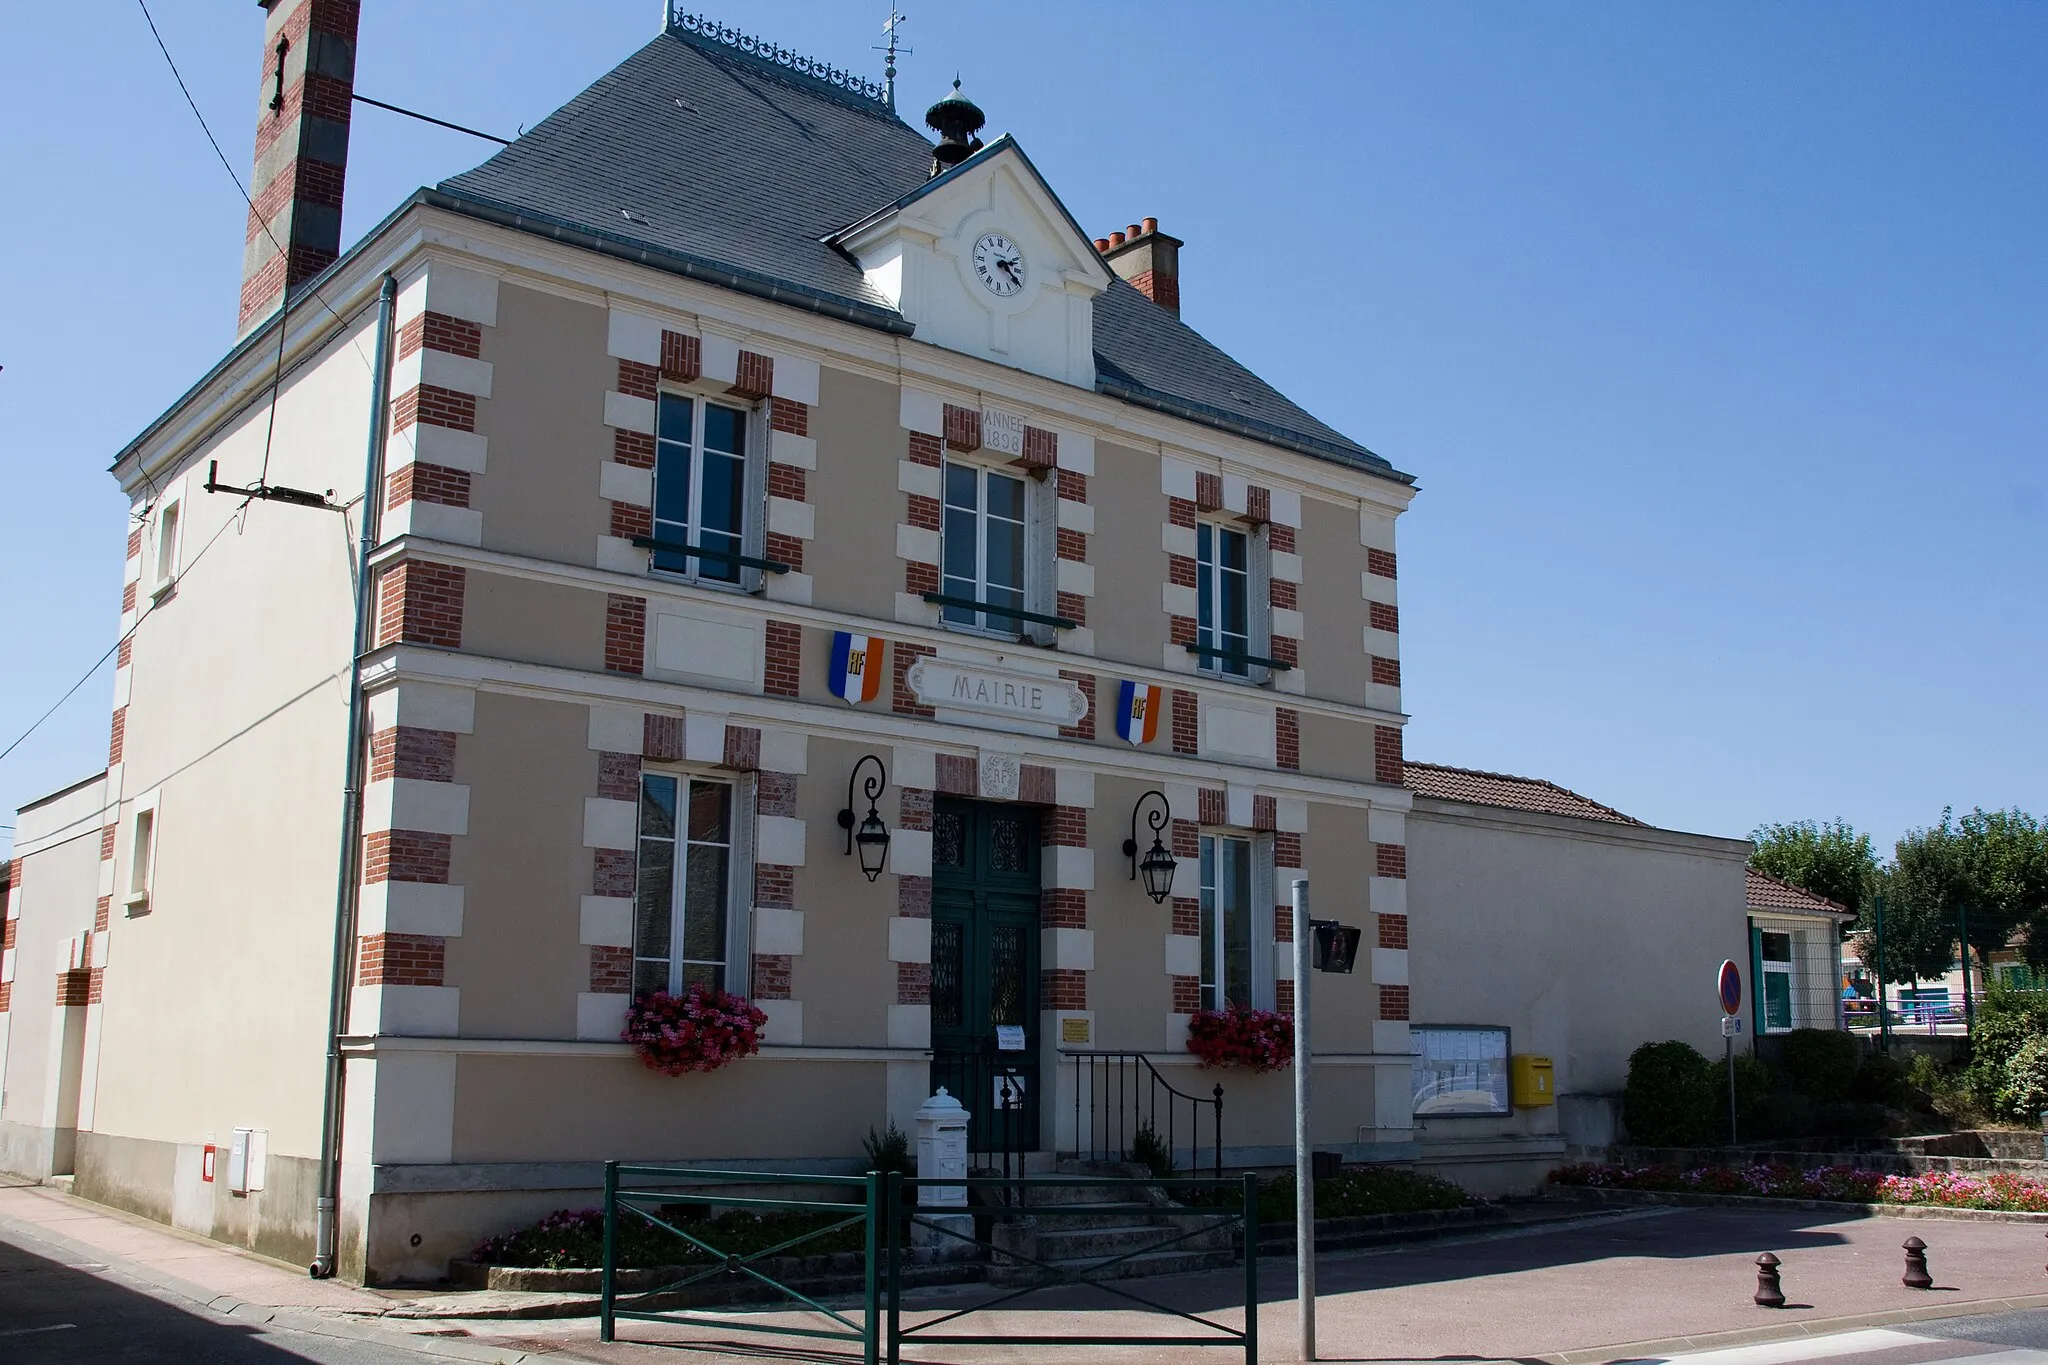 Photo showing: La mairie de Oncy-sur-École, Oncy-sur-École, Essonne, France